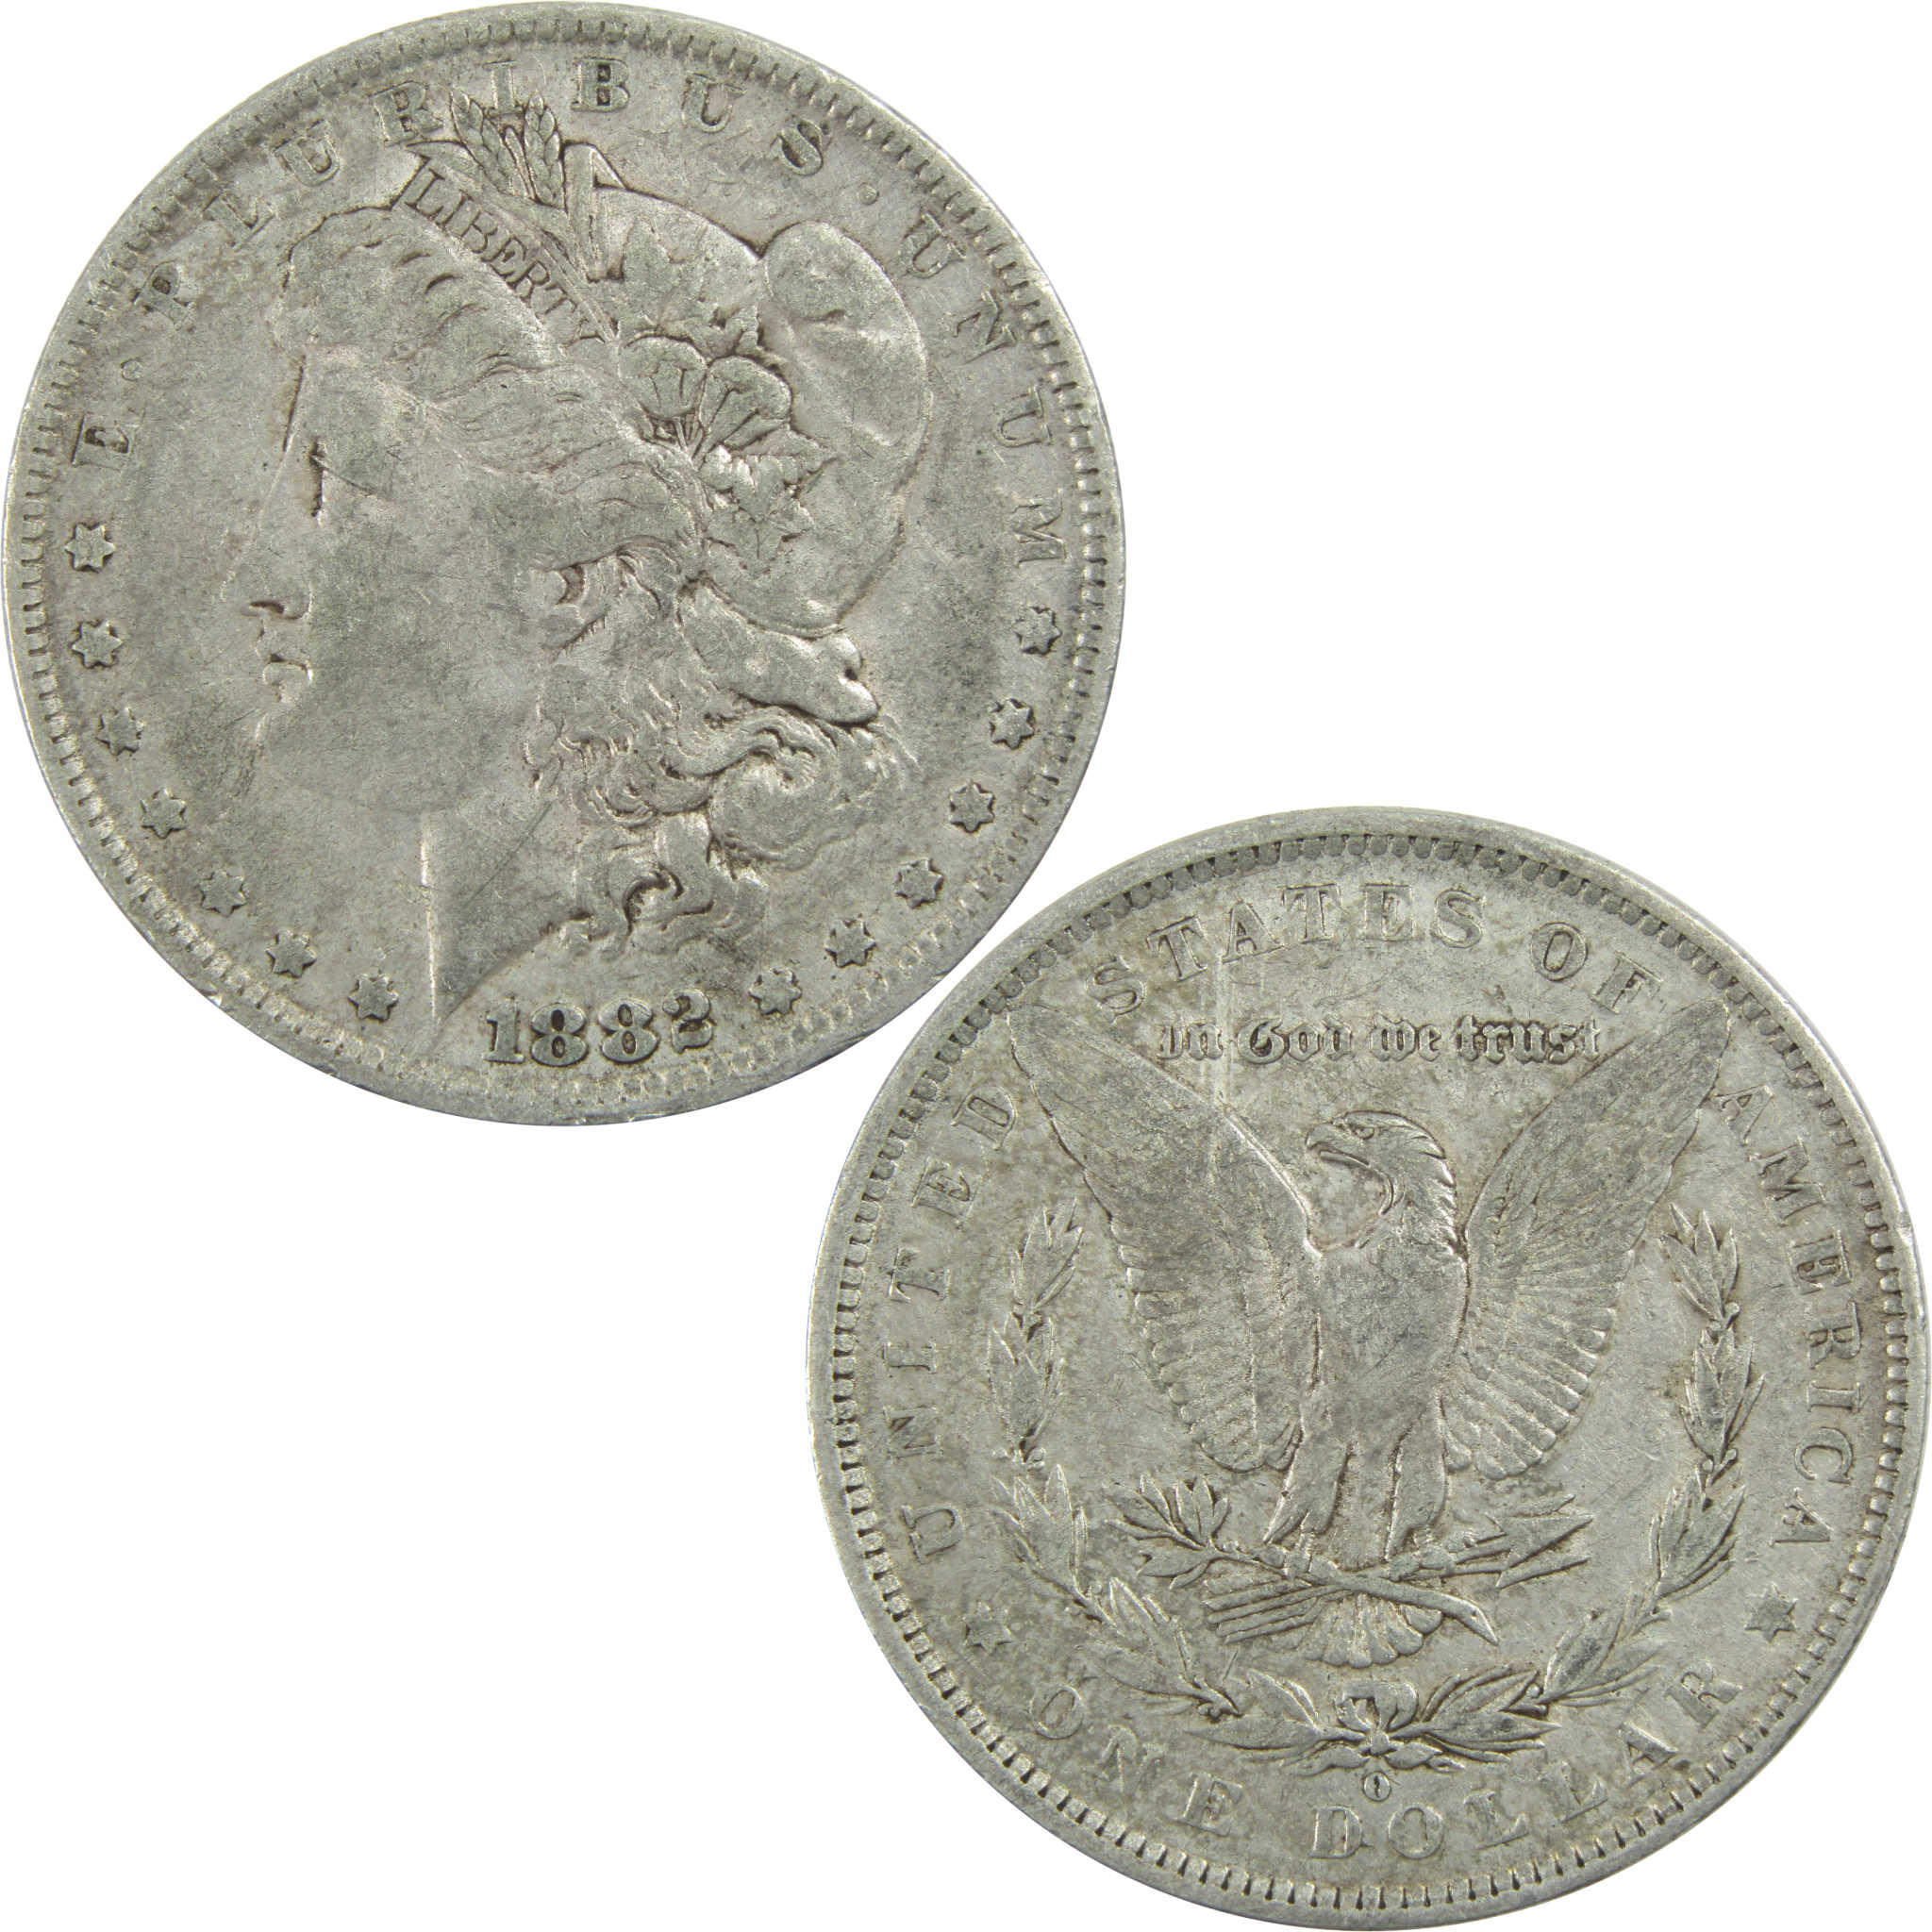 1882 O/S Morgan Dollar VF Very Fine Silver $1 Coin SKU:I13605 - Morgan coin - Morgan silver dollar - Morgan silver dollar for sale - Profile Coins &amp; Collectibles